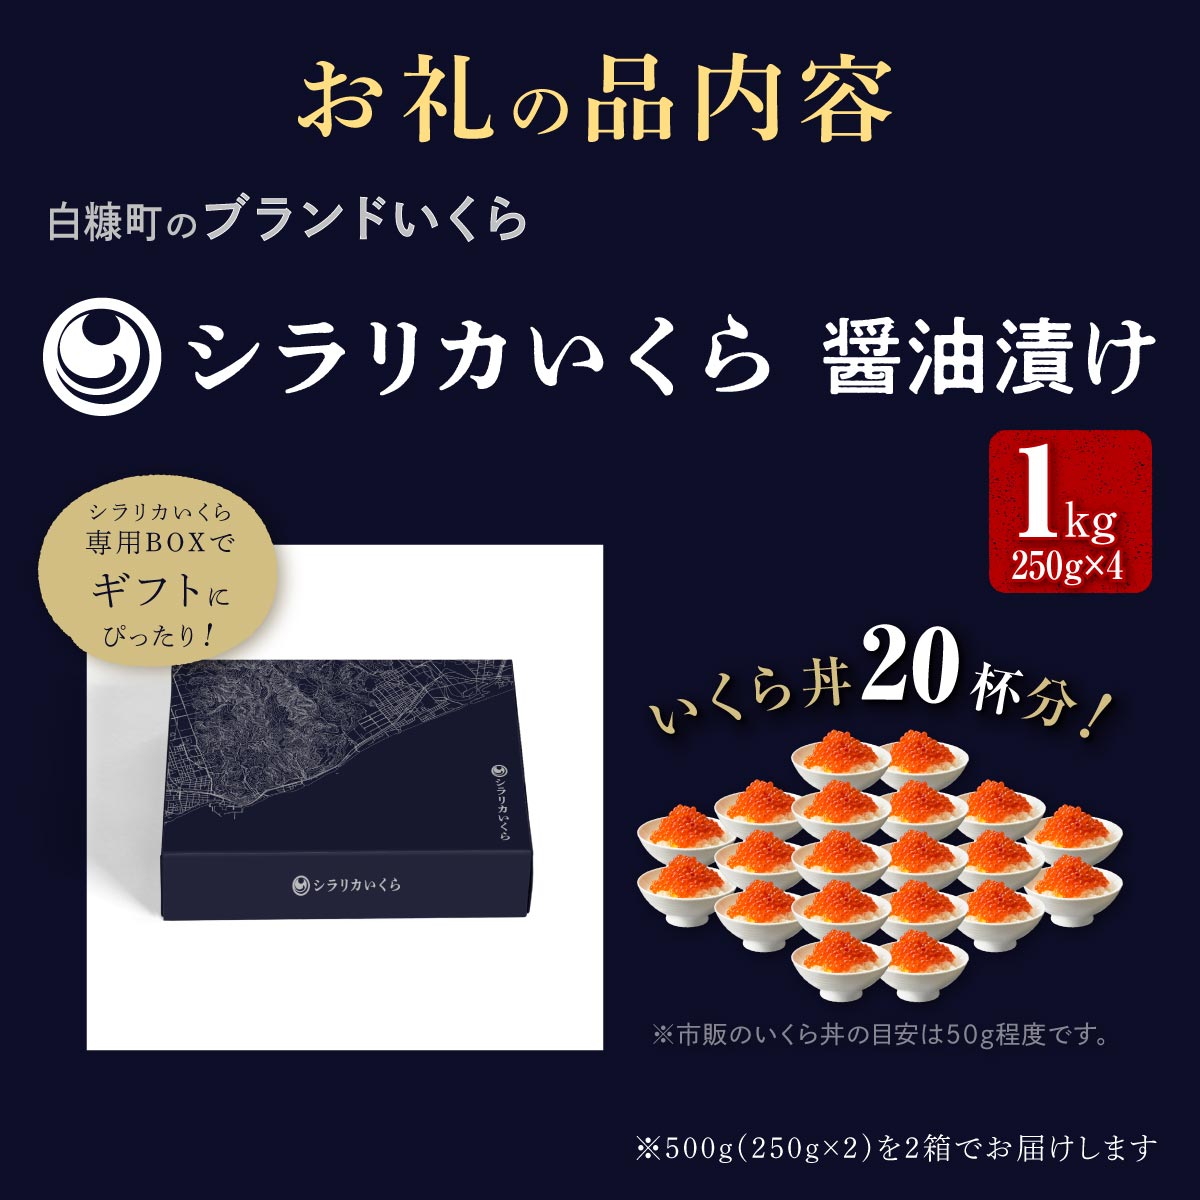 シラリカいくら(醤油味)【1kg(250g×4)】